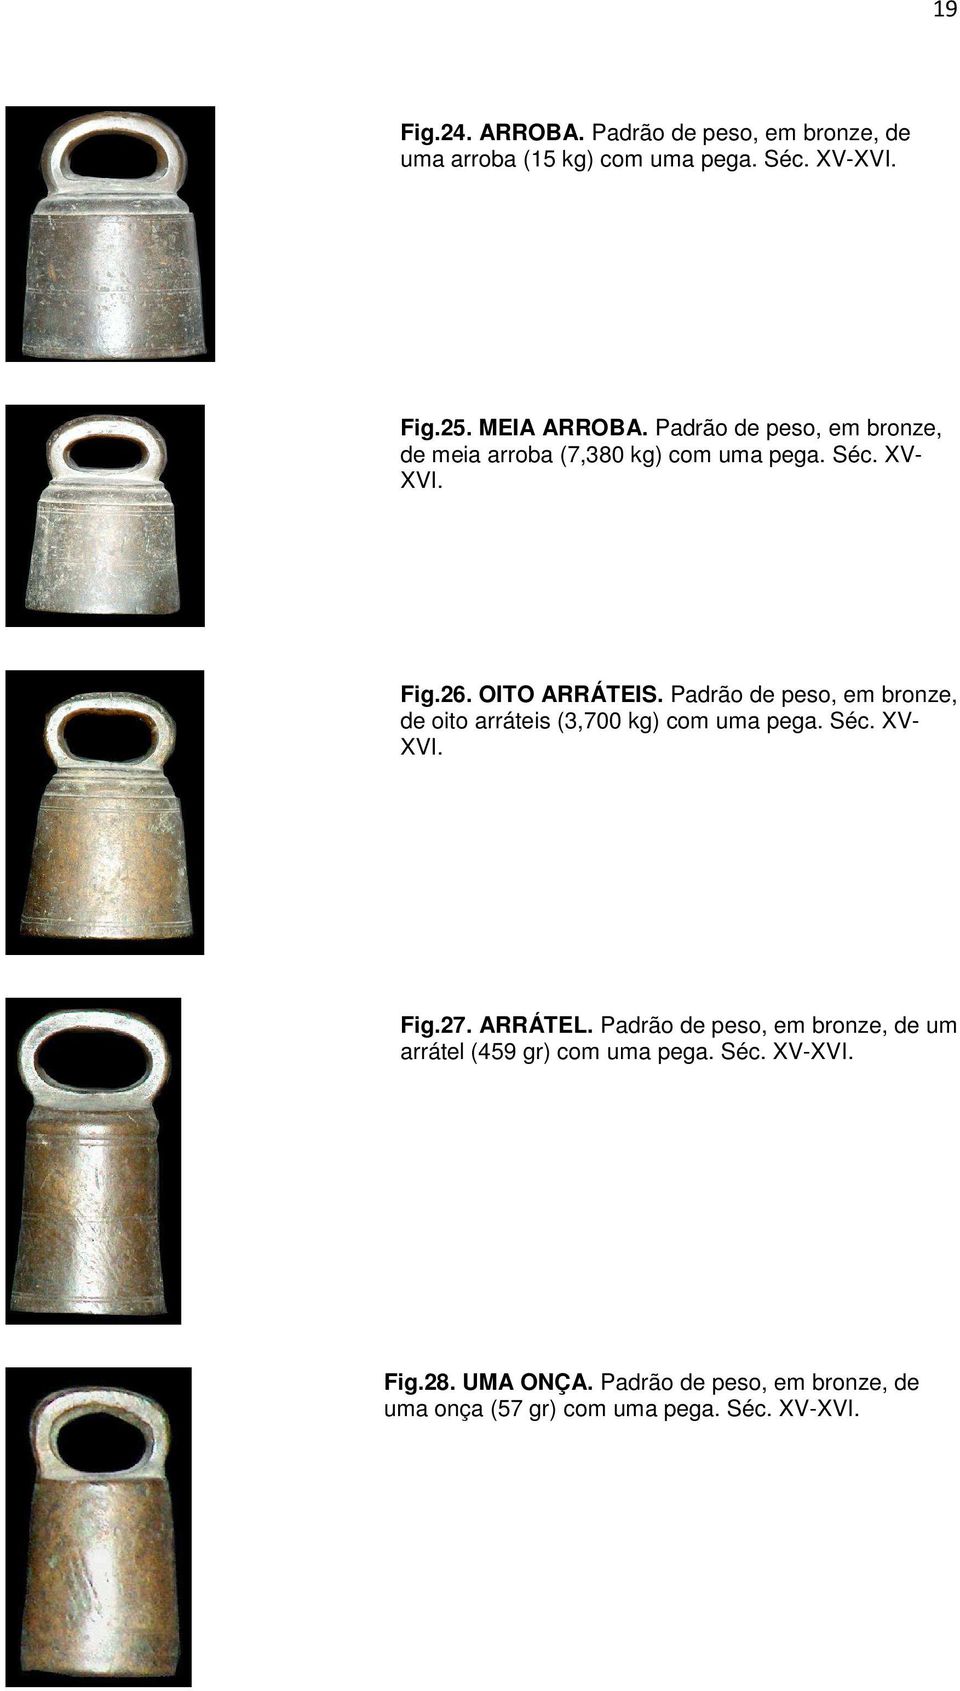 Padrão de peso, em bronze, de oito arráteis (3,700 kg) com uma pega. Séc. XV- XVI. Fig.27. ARRÁTEL.